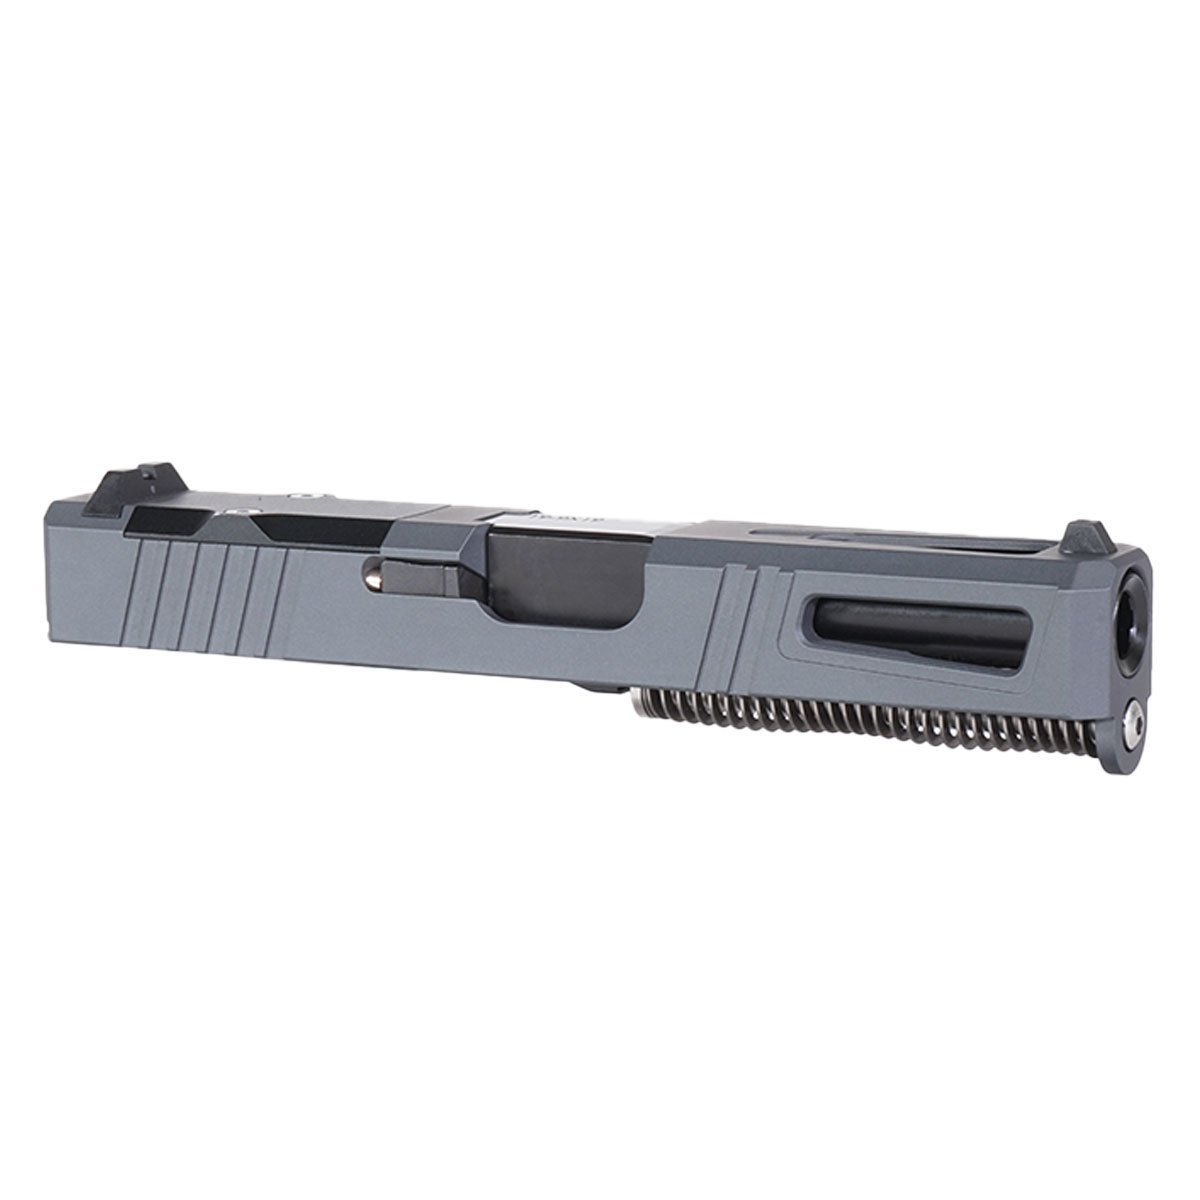 DDS 'Sneak Peek' 9mm Complete Slide Kit - Glock 19 Gen 1-3 Compatible